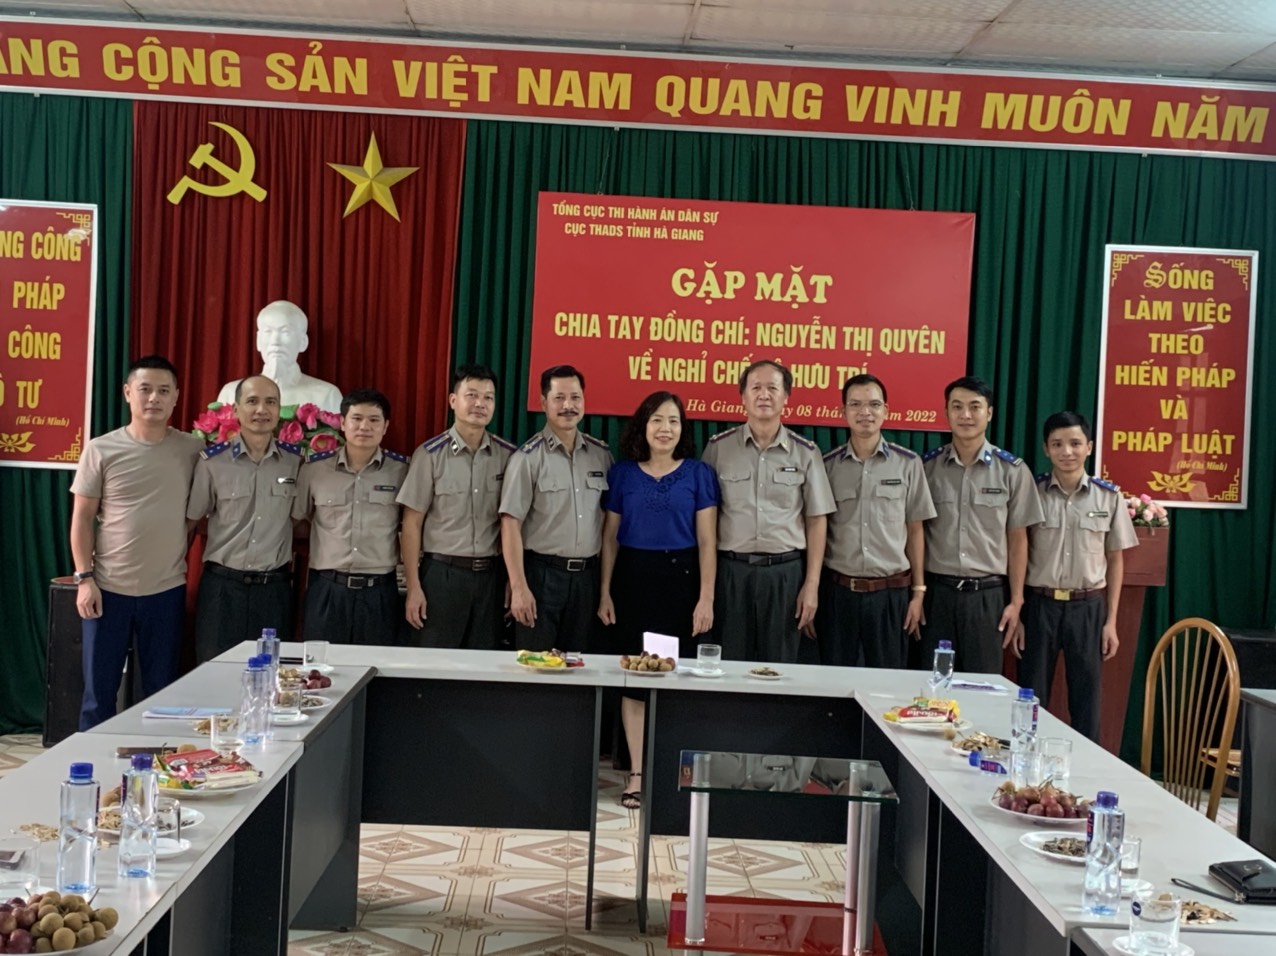 Tổ chức gặp mặt chia tay đồng chí Nguyễn Thị Quyên về nghỉ chế độ hưu trí